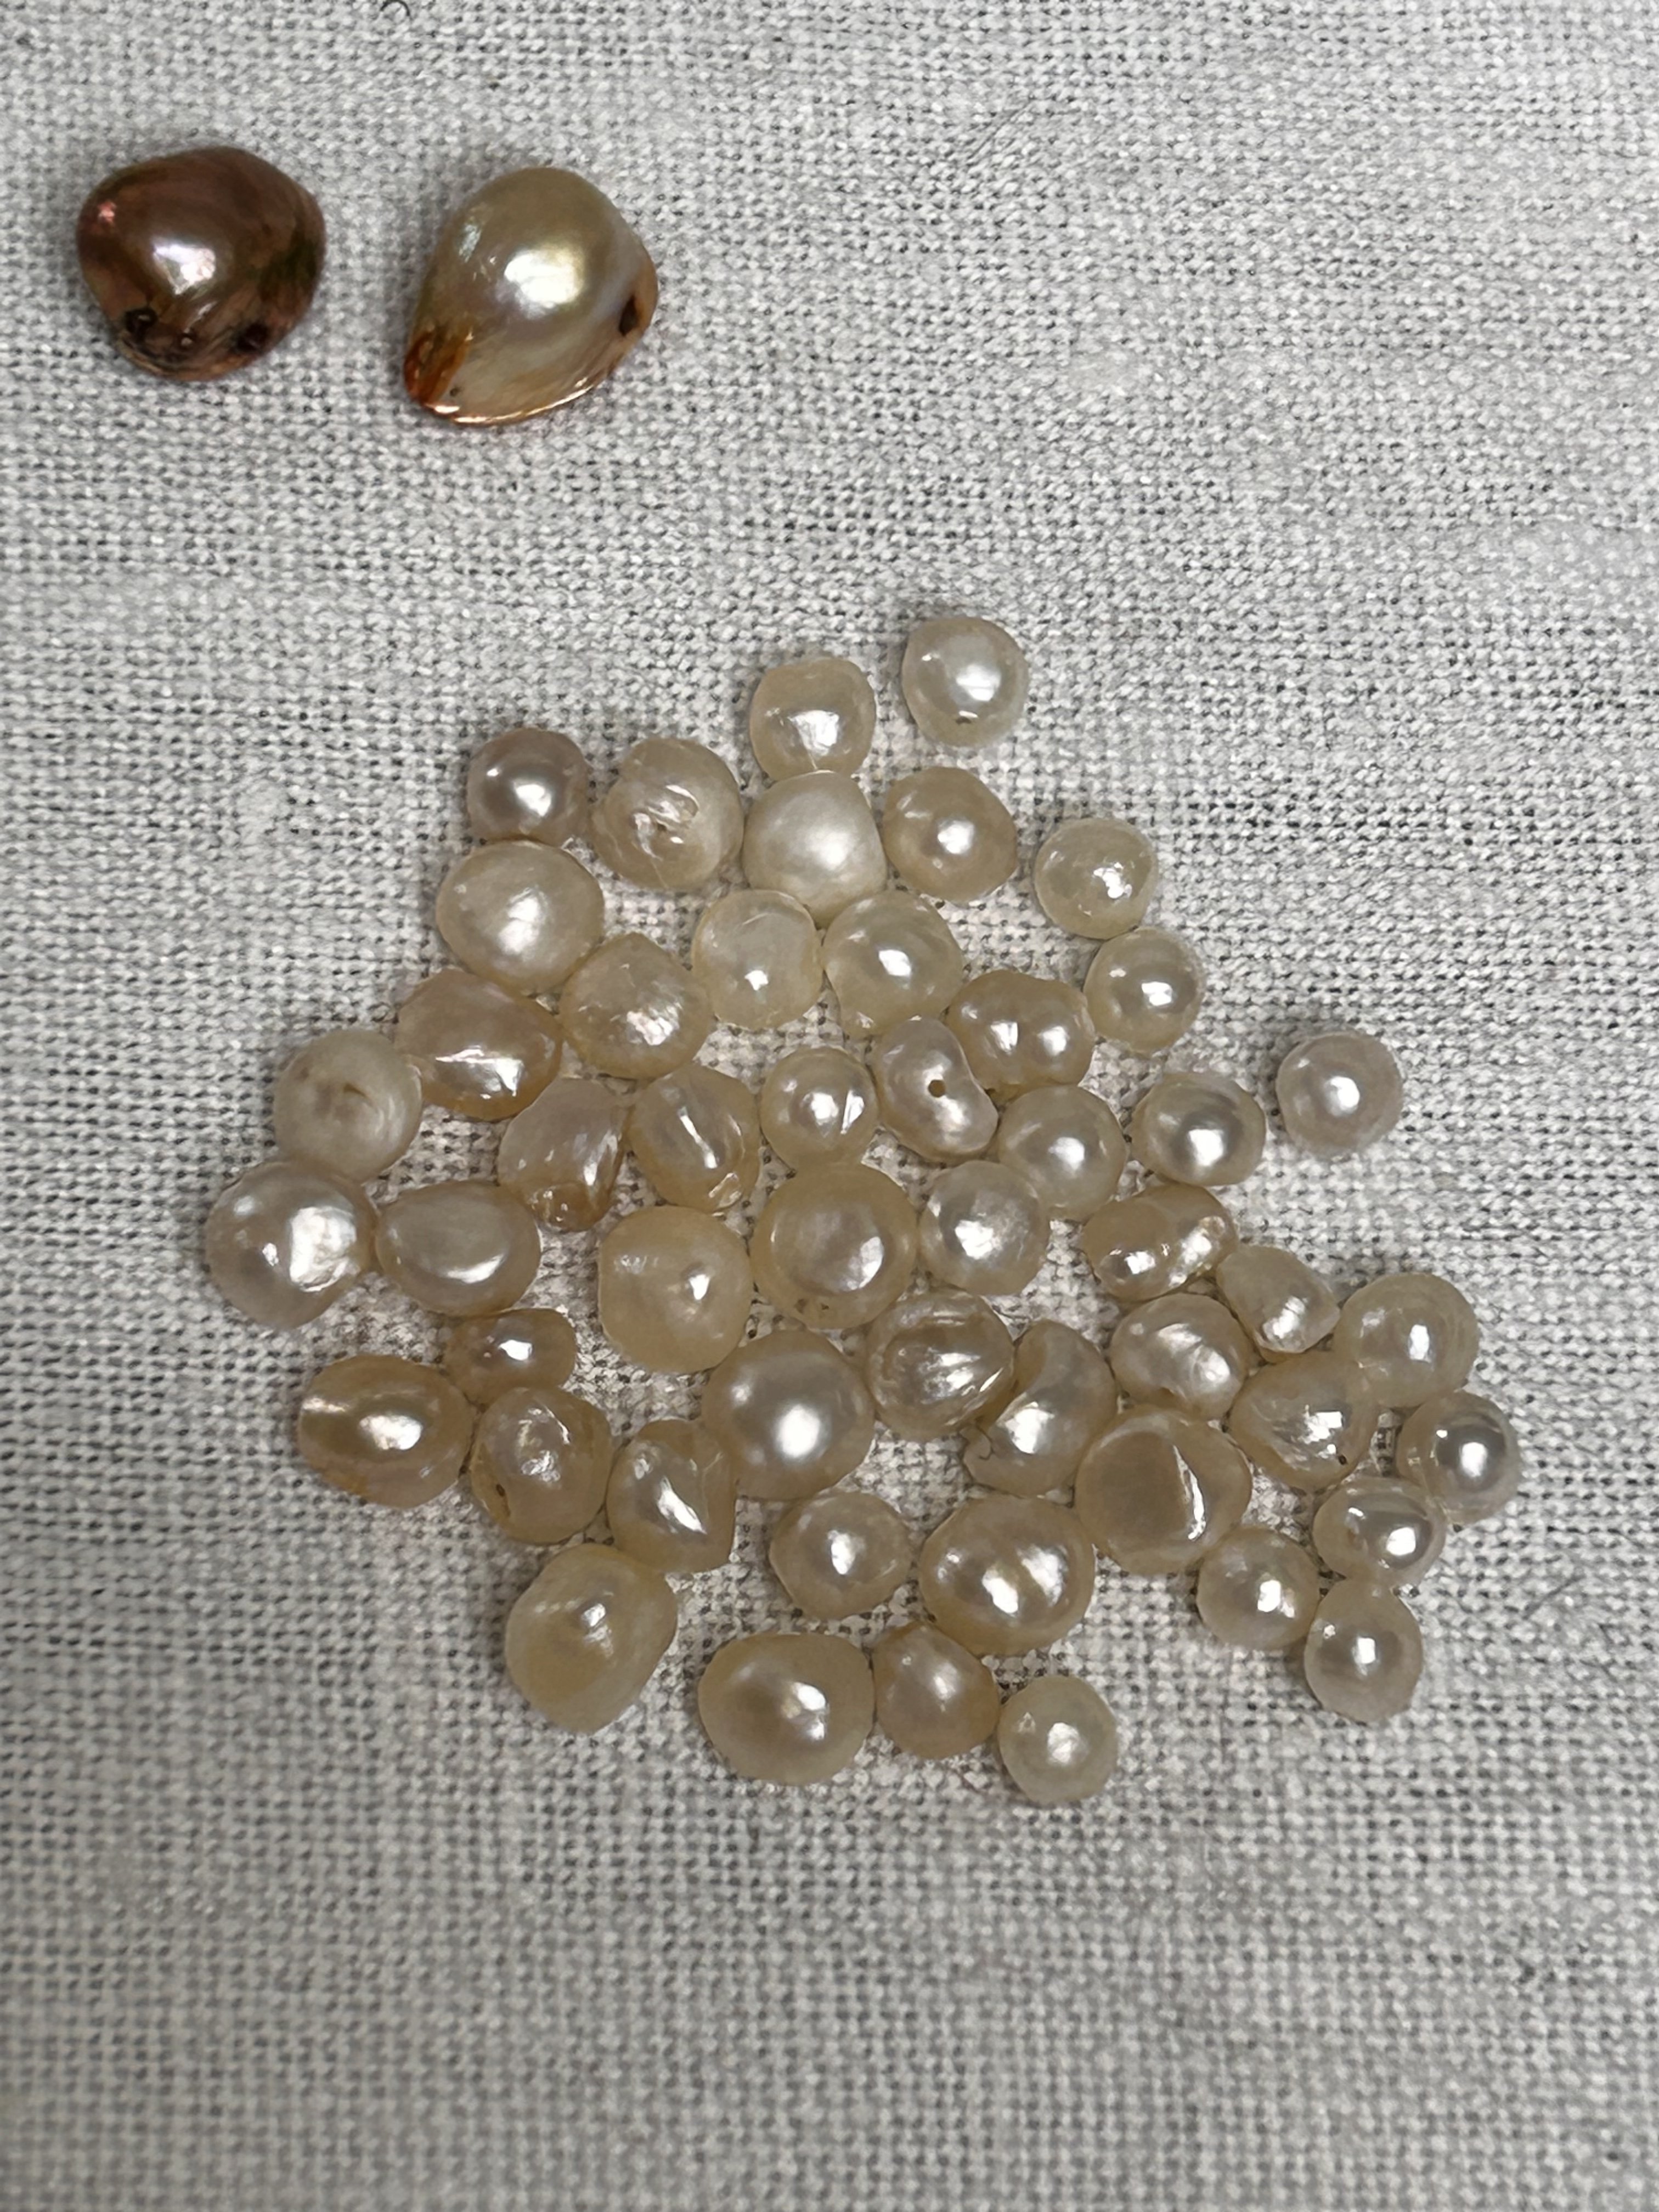 Loose natural pearls